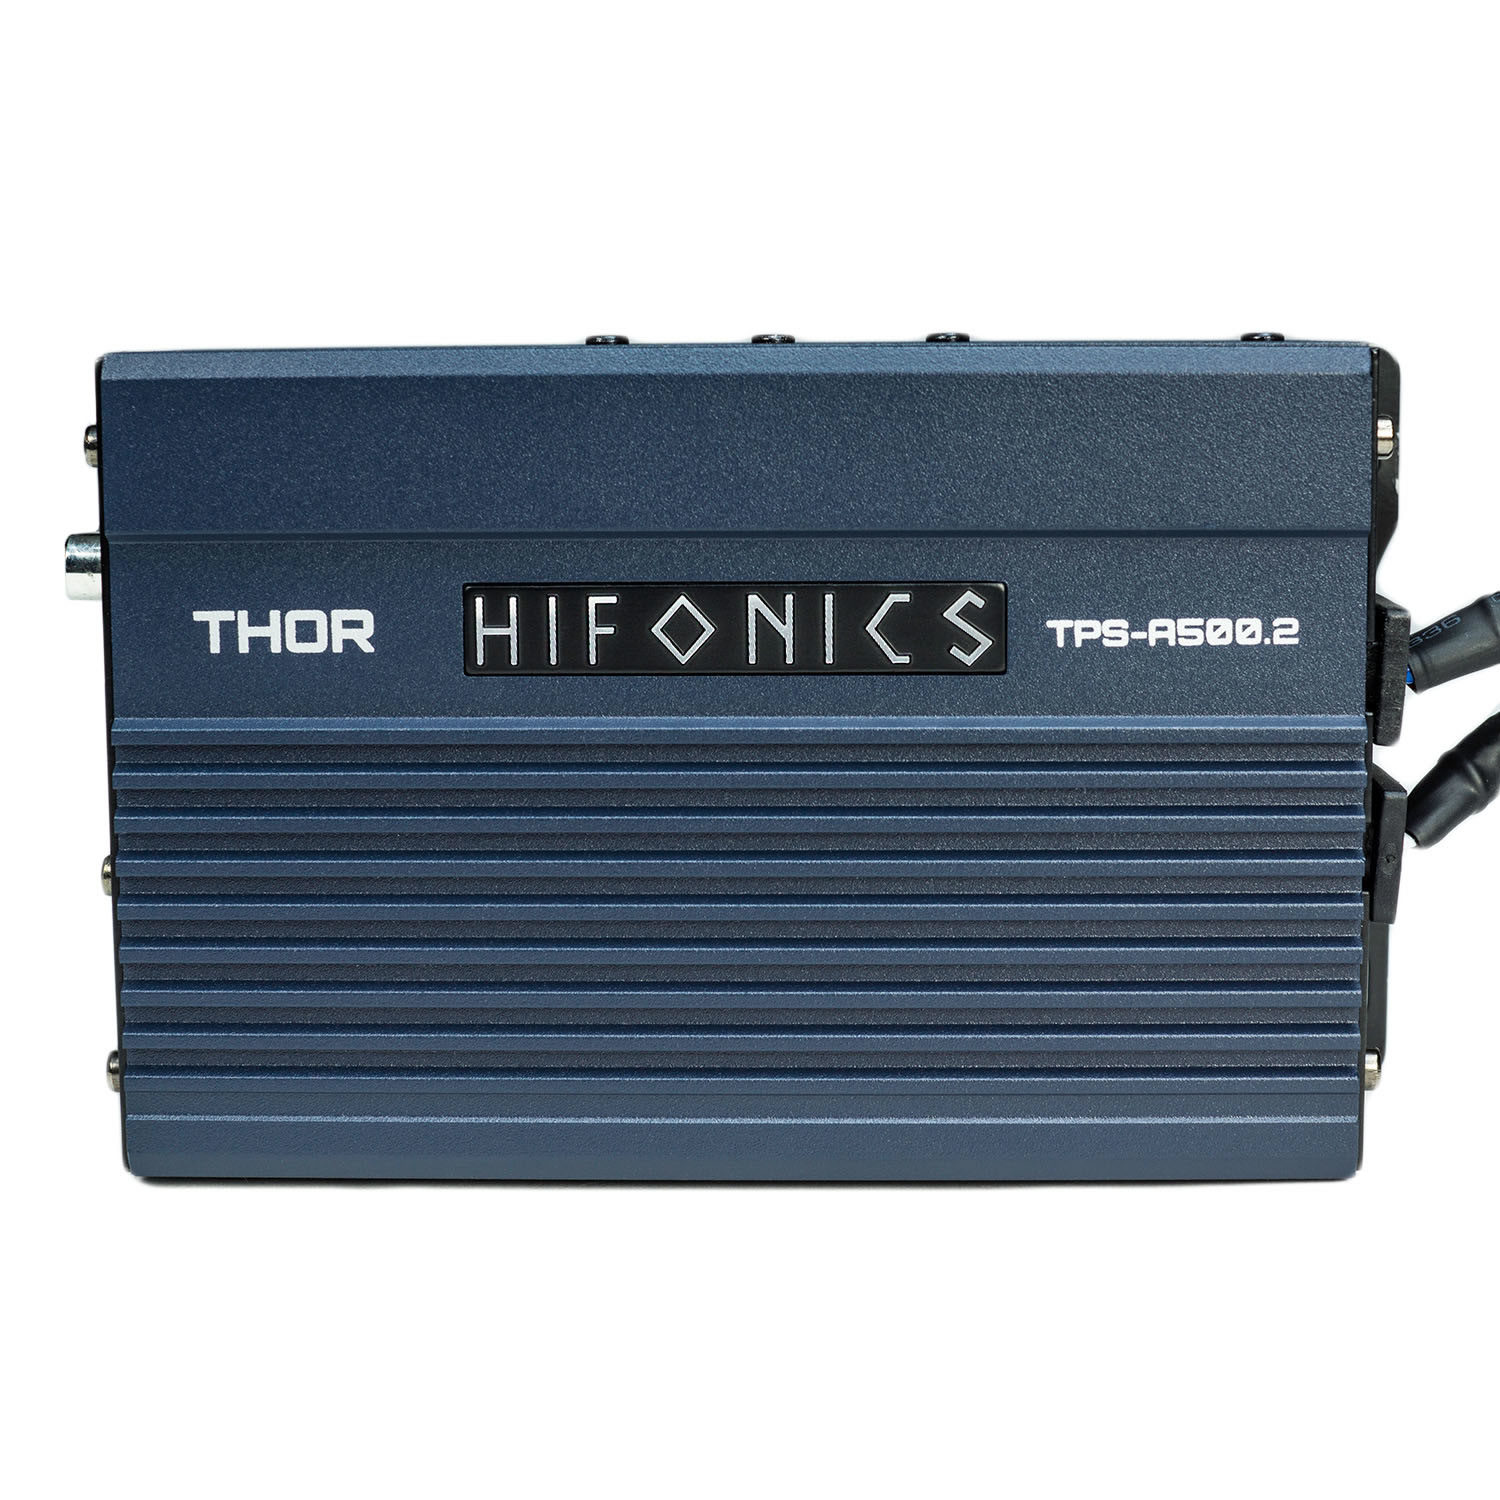 TPS-A600.5 THOR 600 Watt Amplifier | Hifonics